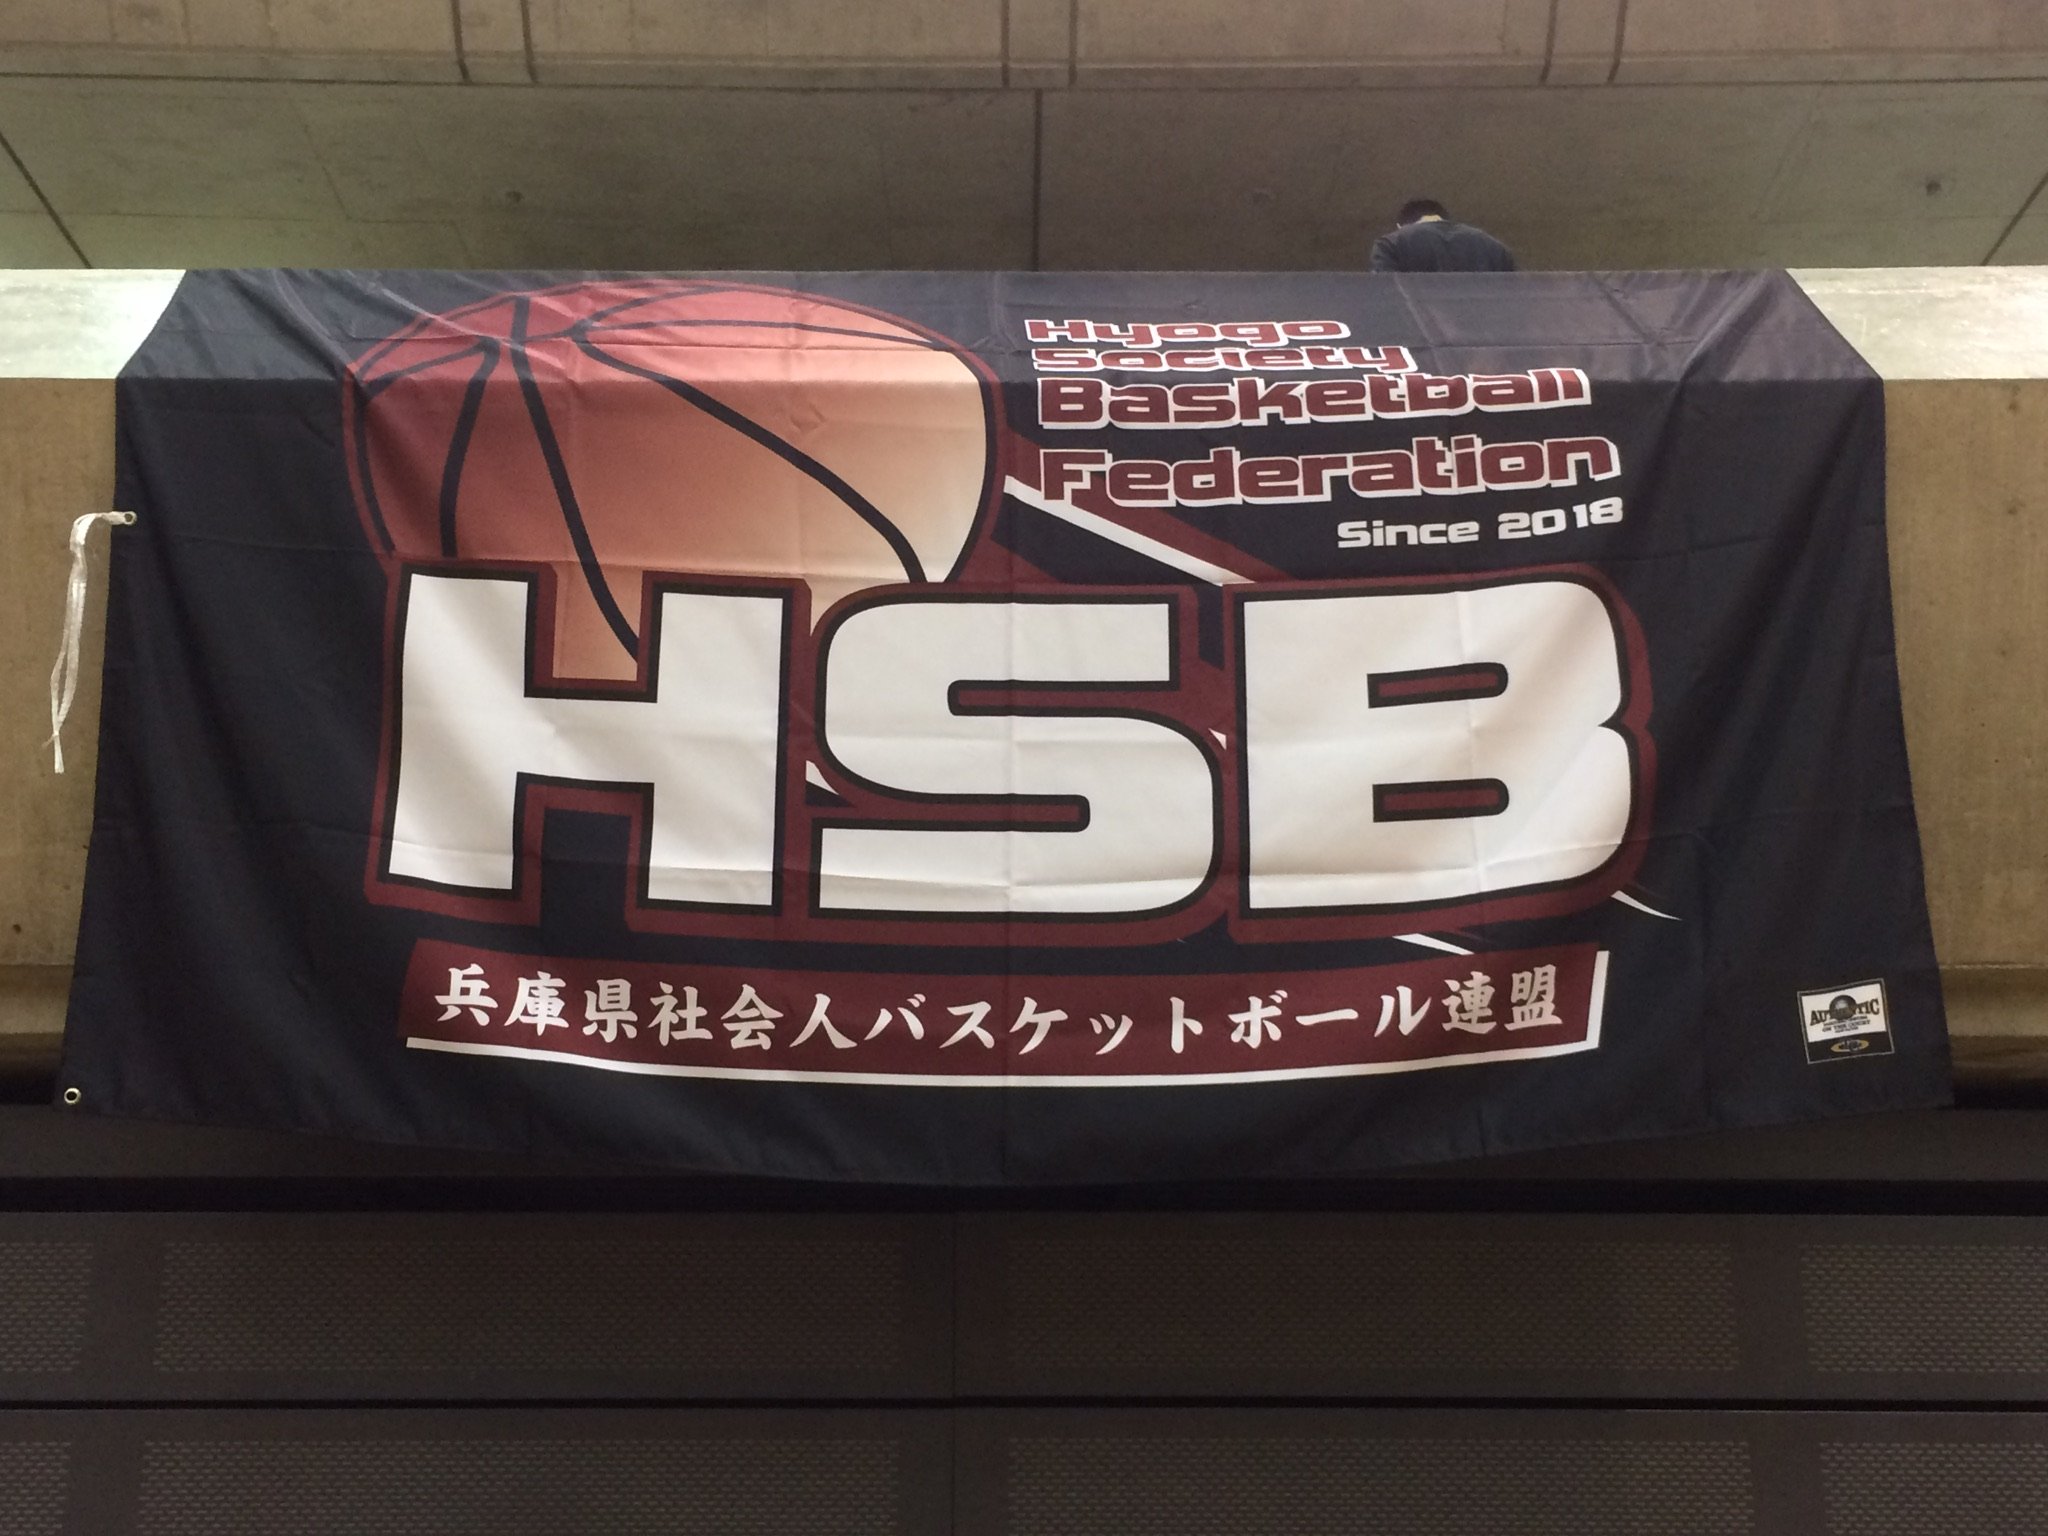 兵庫県社会人バスケットボール連盟の公式twitterです。 こちらでは兵庫県社会人バスケットボール連盟の各種情報を発信いたします。